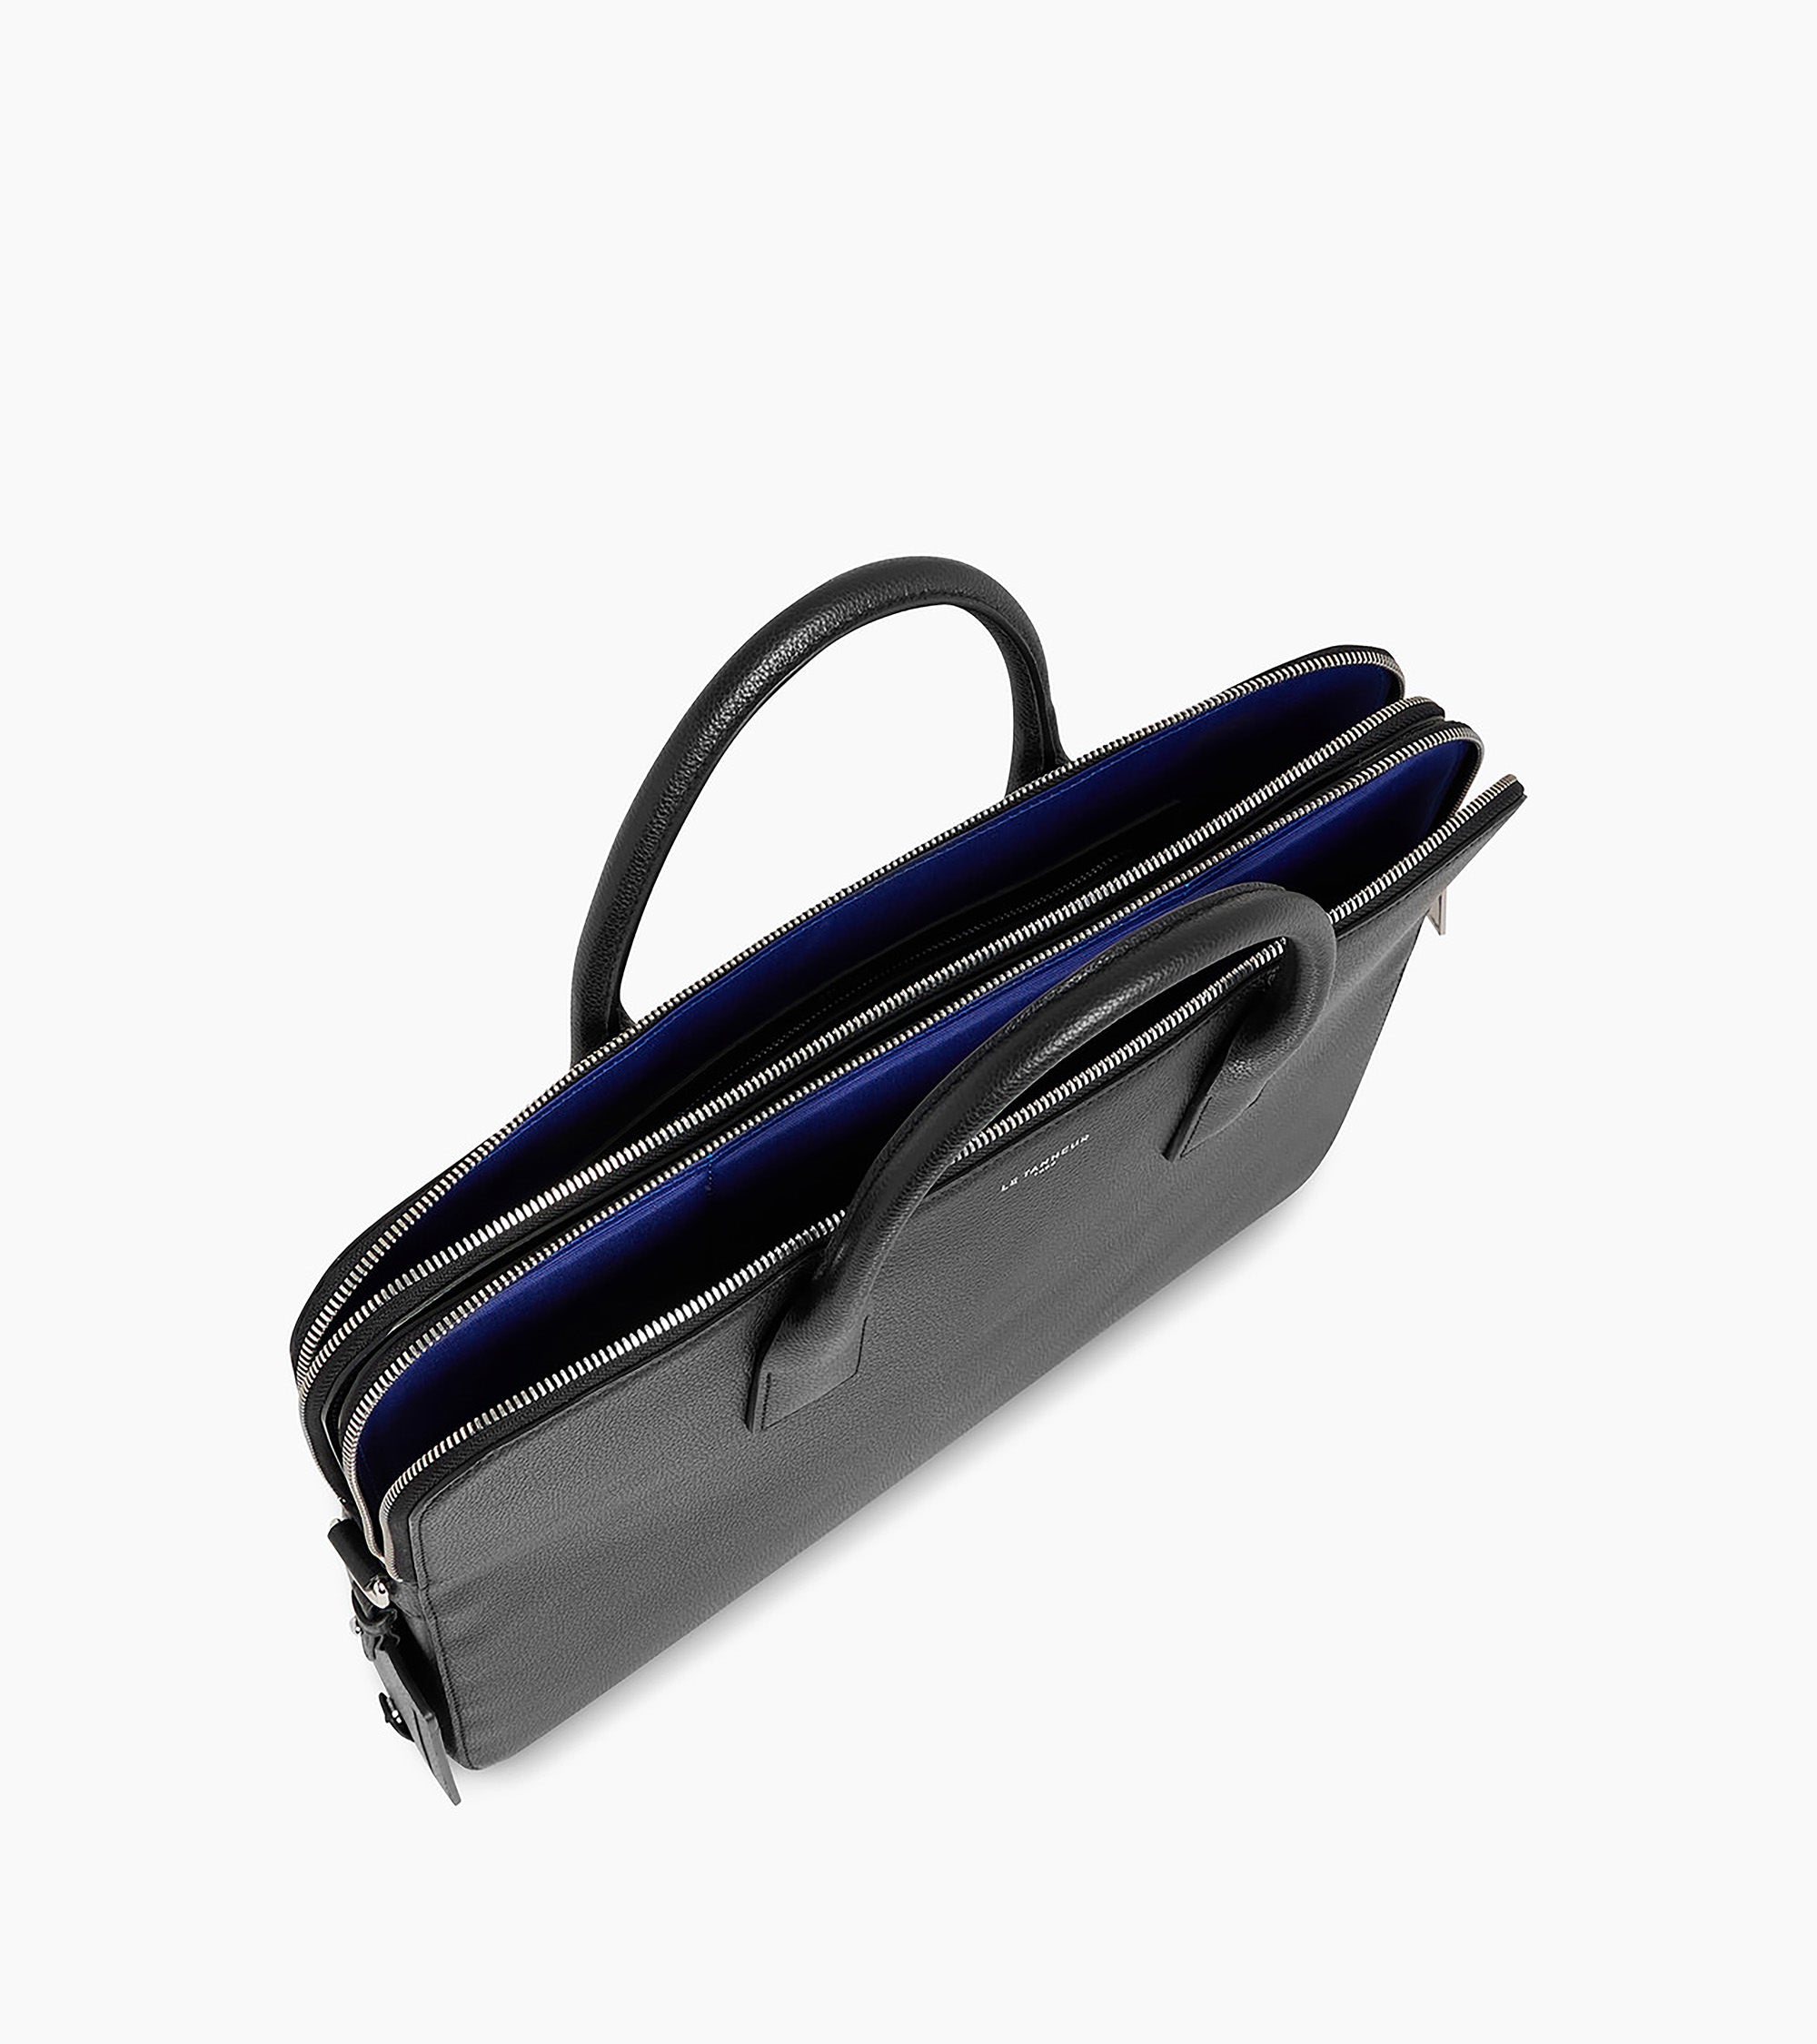 Slimline-Businesstasche Emile 14 aus genarbtem Leder mit 2 Balgfalten